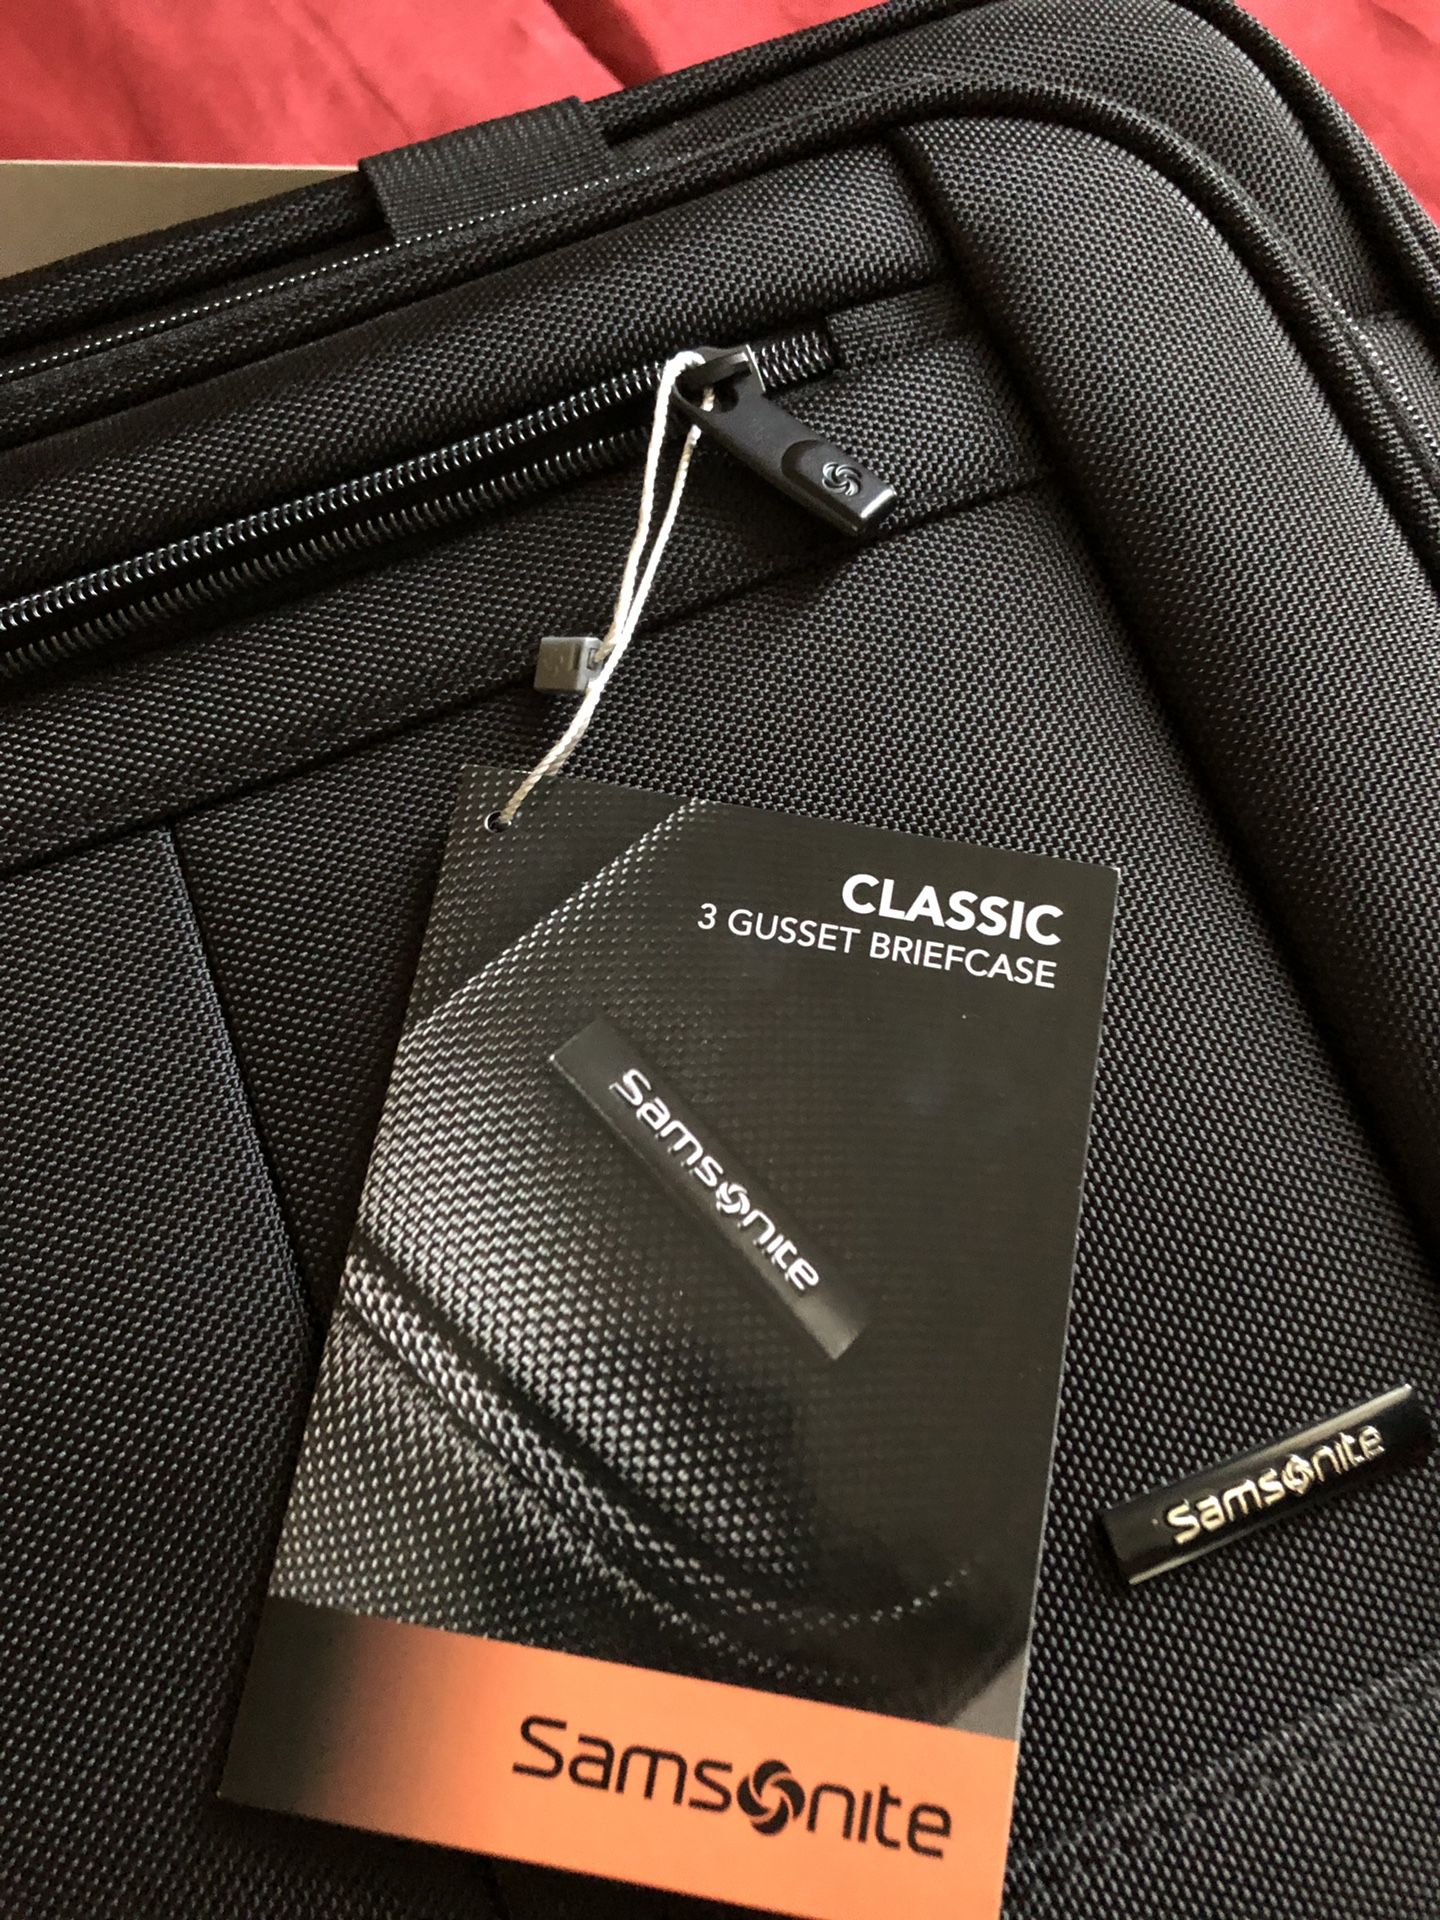 Samsonite classic briefcase.new$50